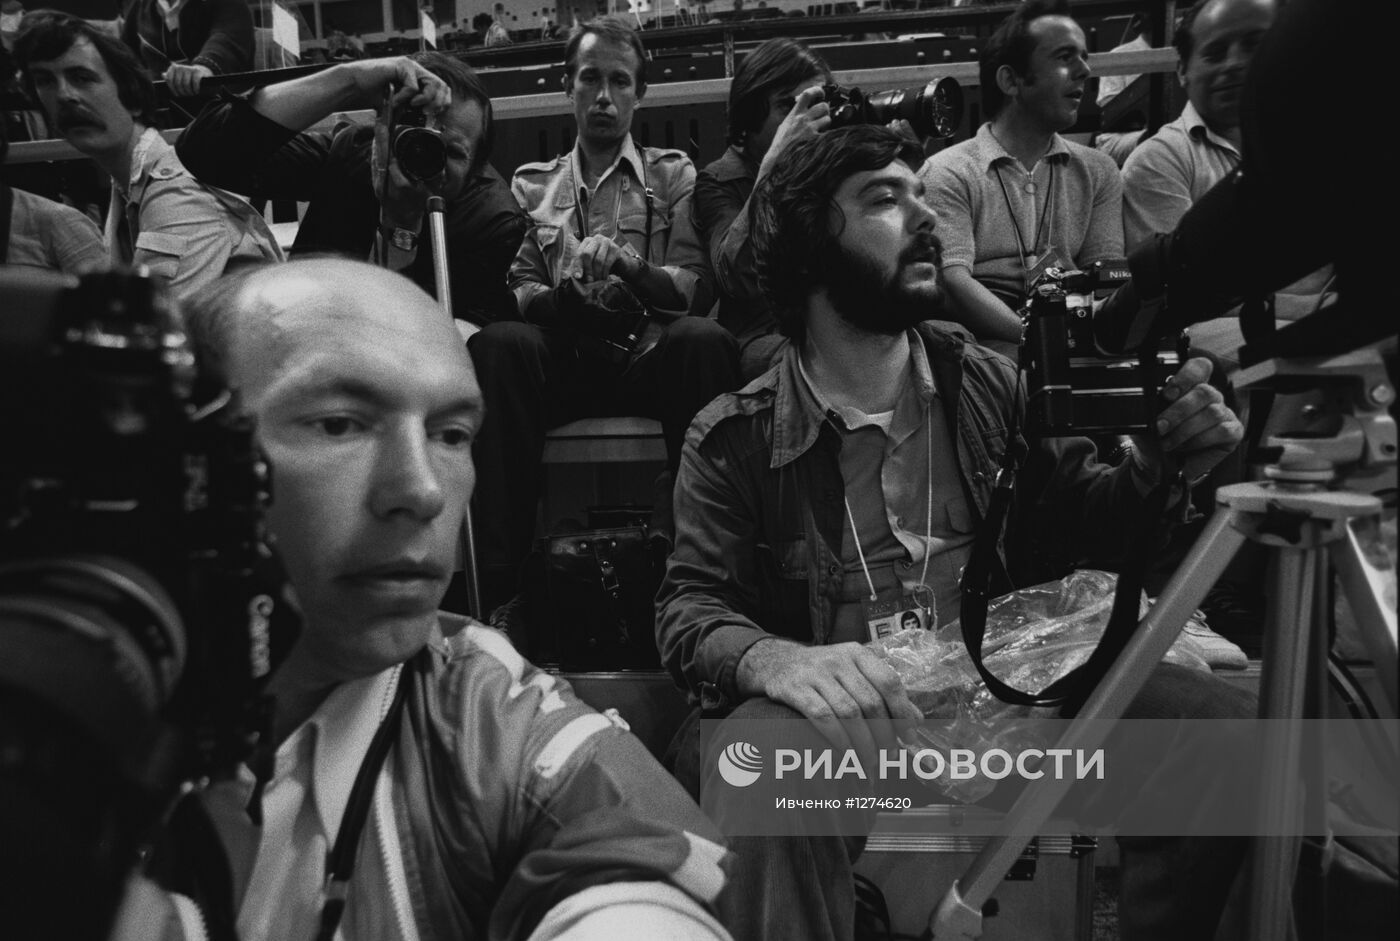 Фотокорреспонденты Павел Ивченко и Владимир Вяткин